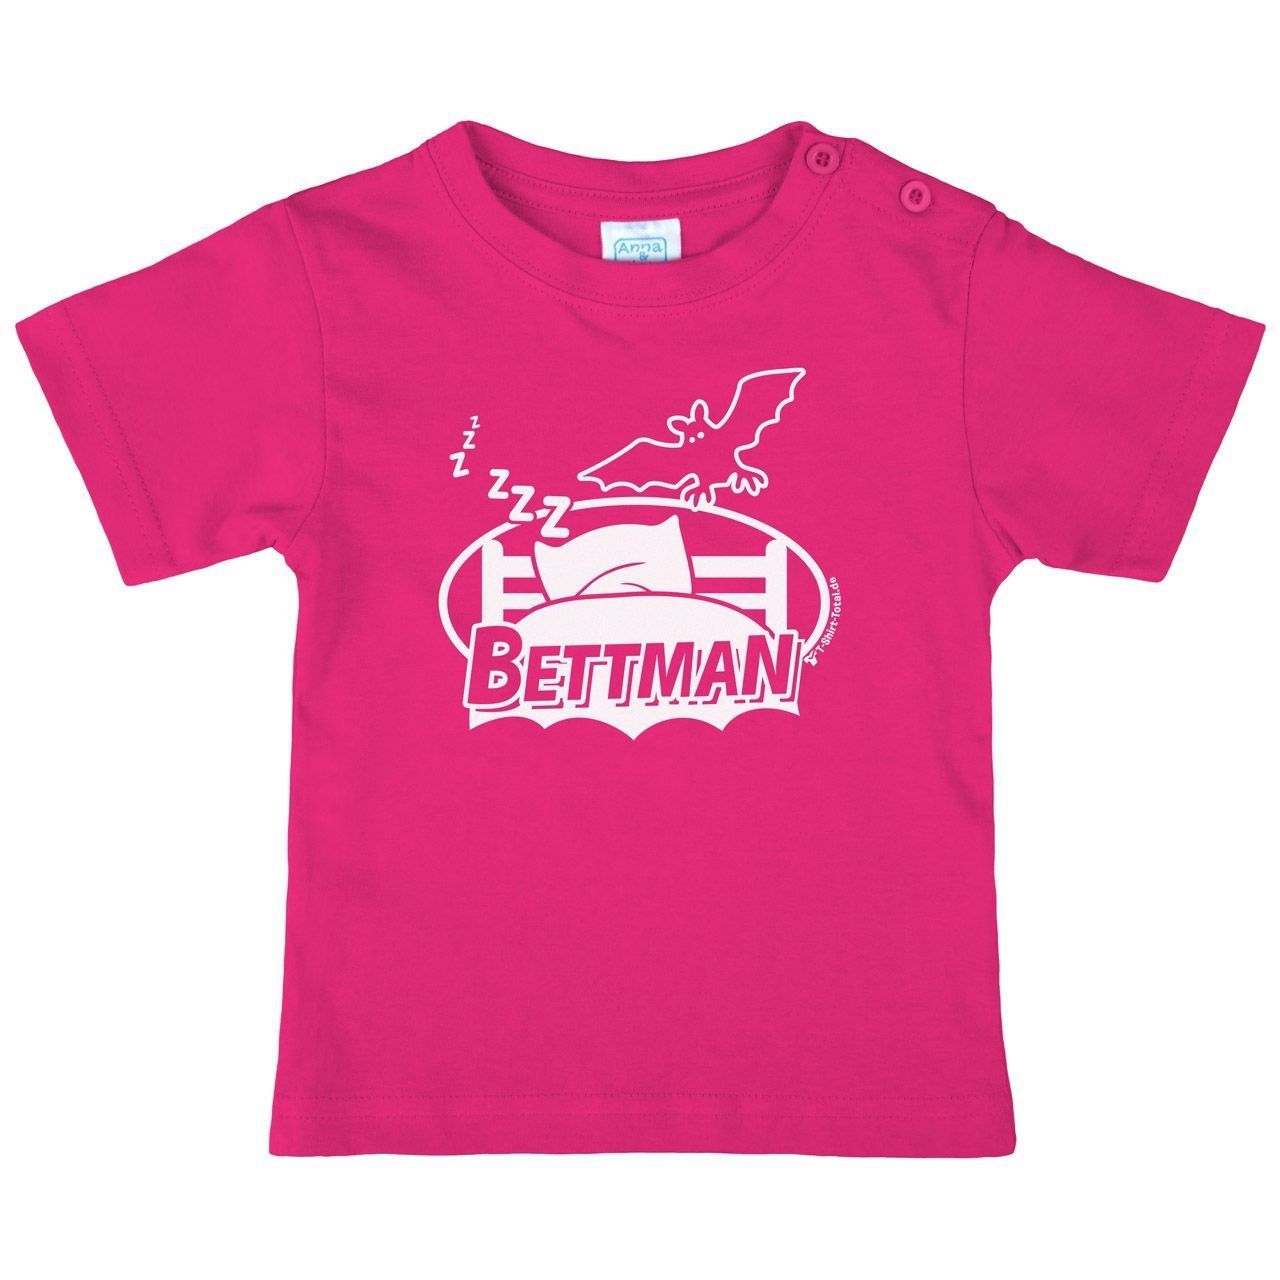 Bettman Kinder T-Shirt pink 56 / 62